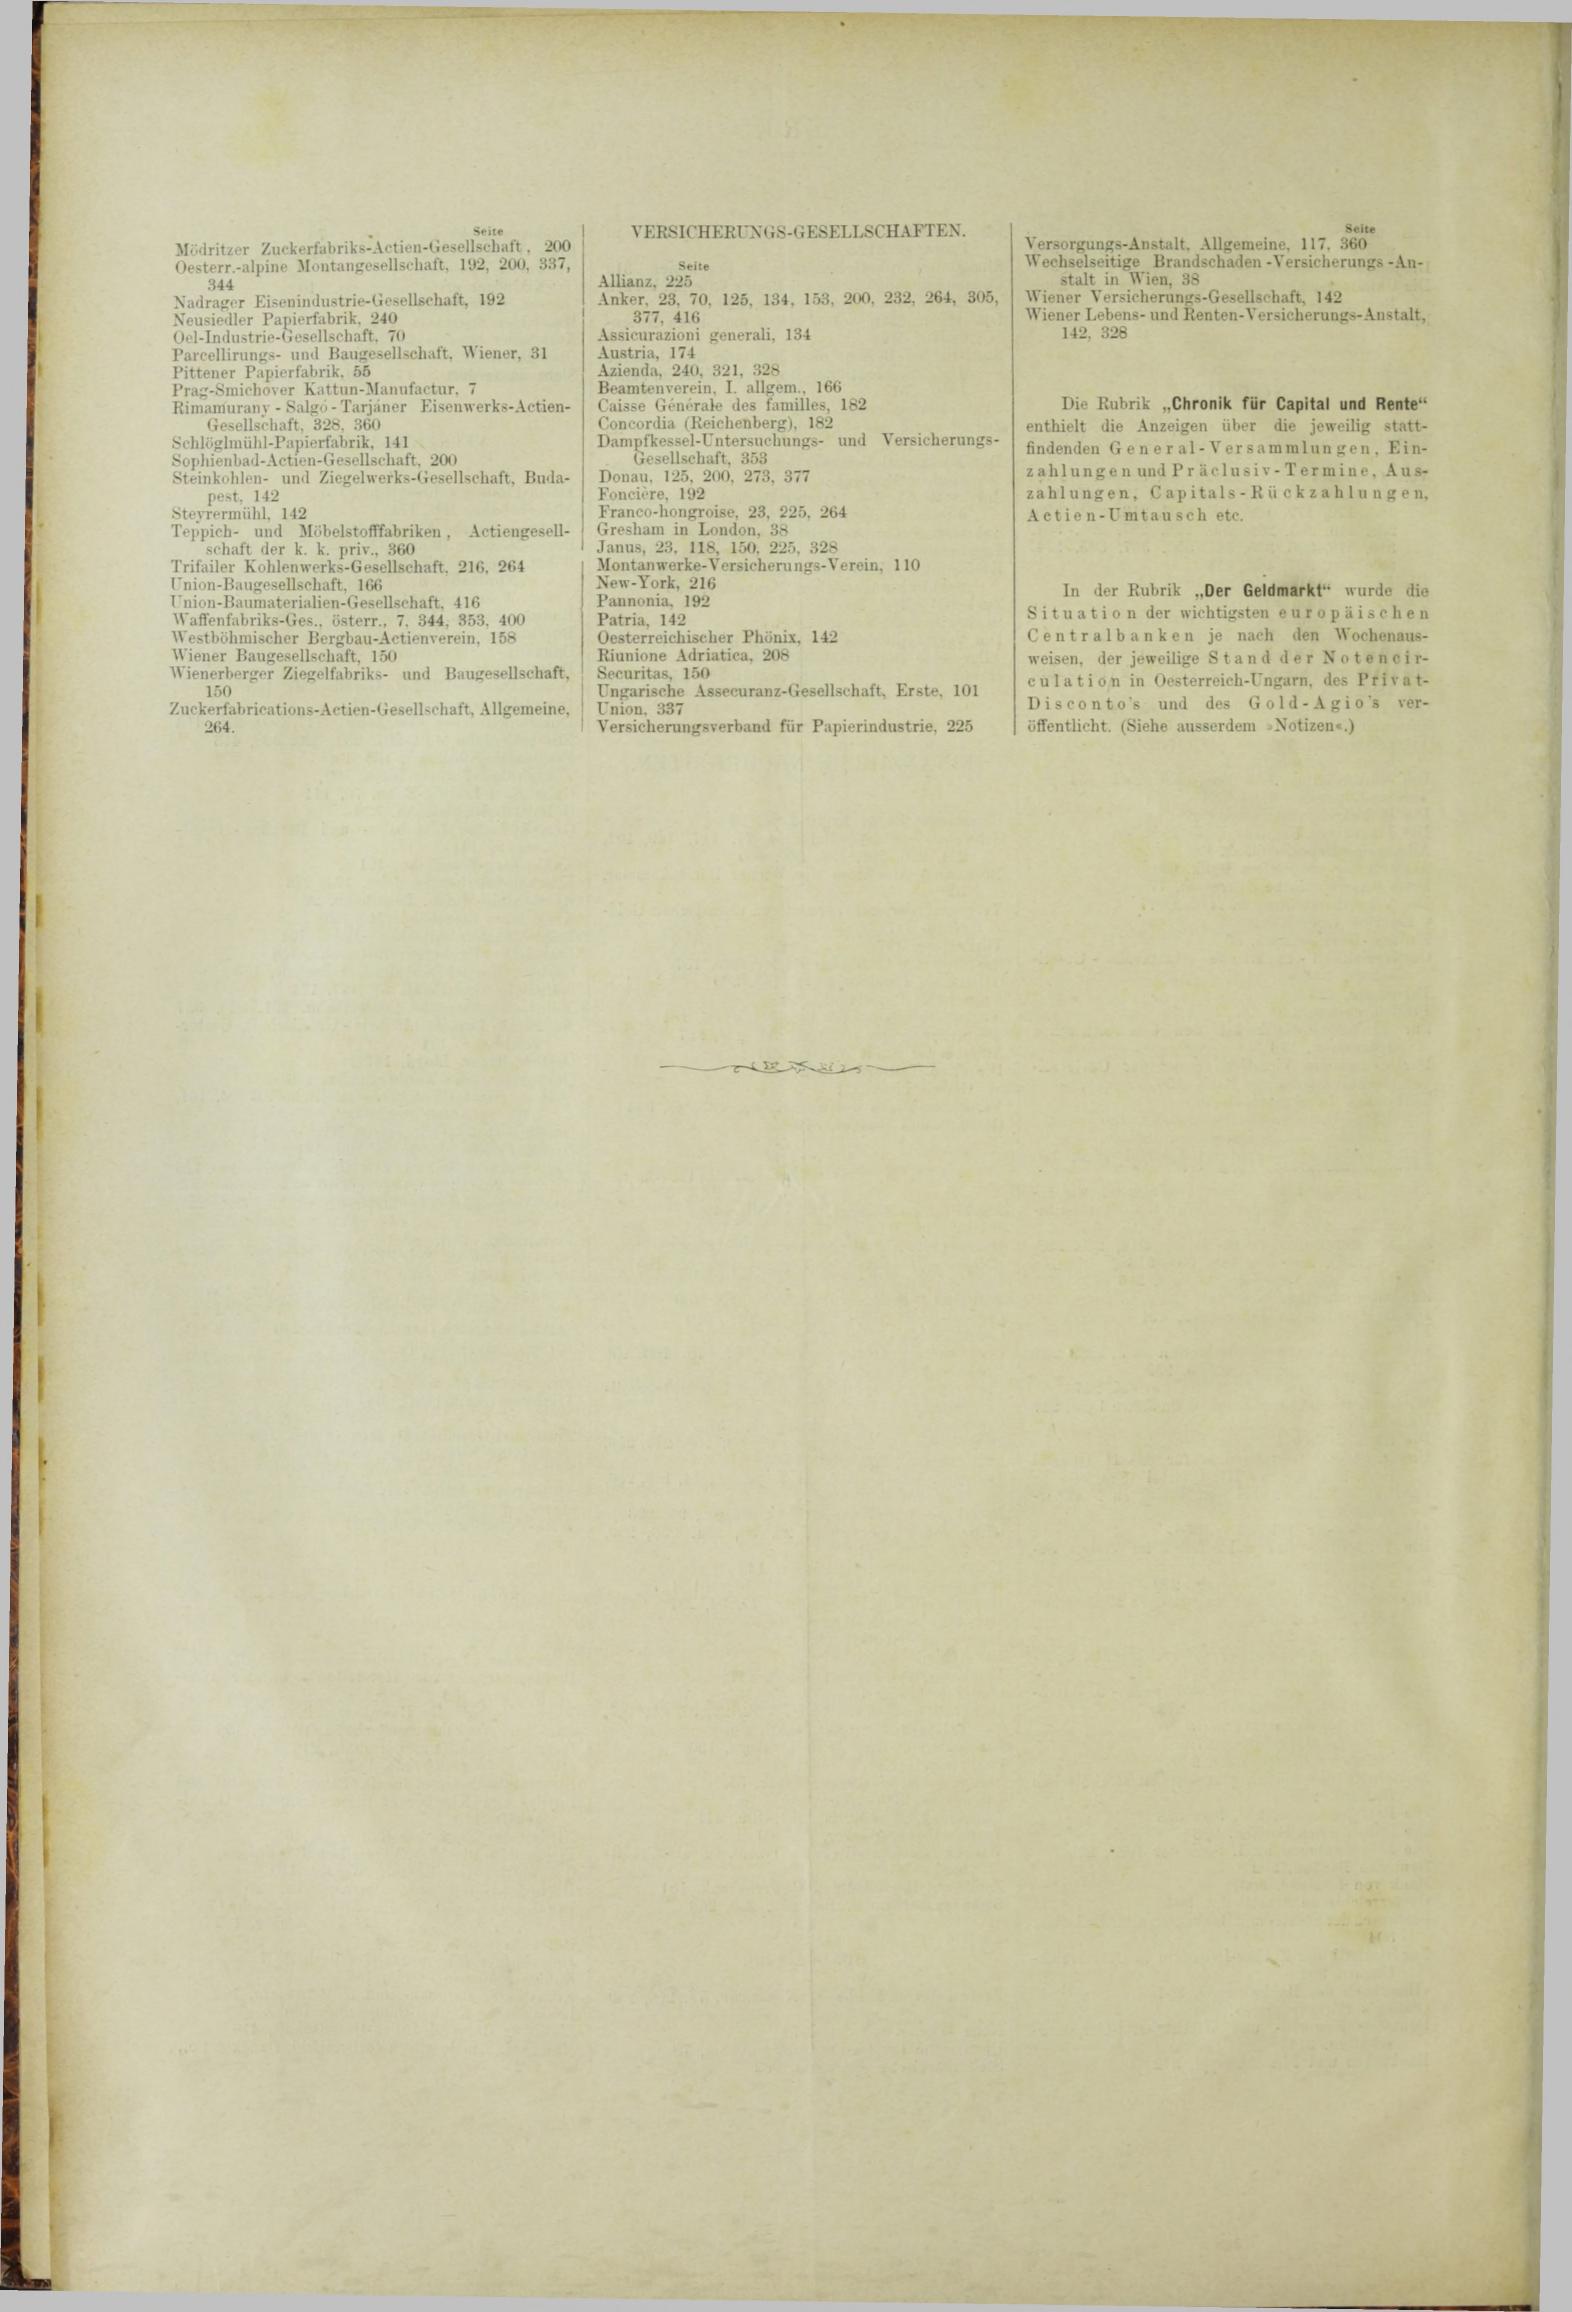 Der Tresor 30.08.1883 - Seite 12